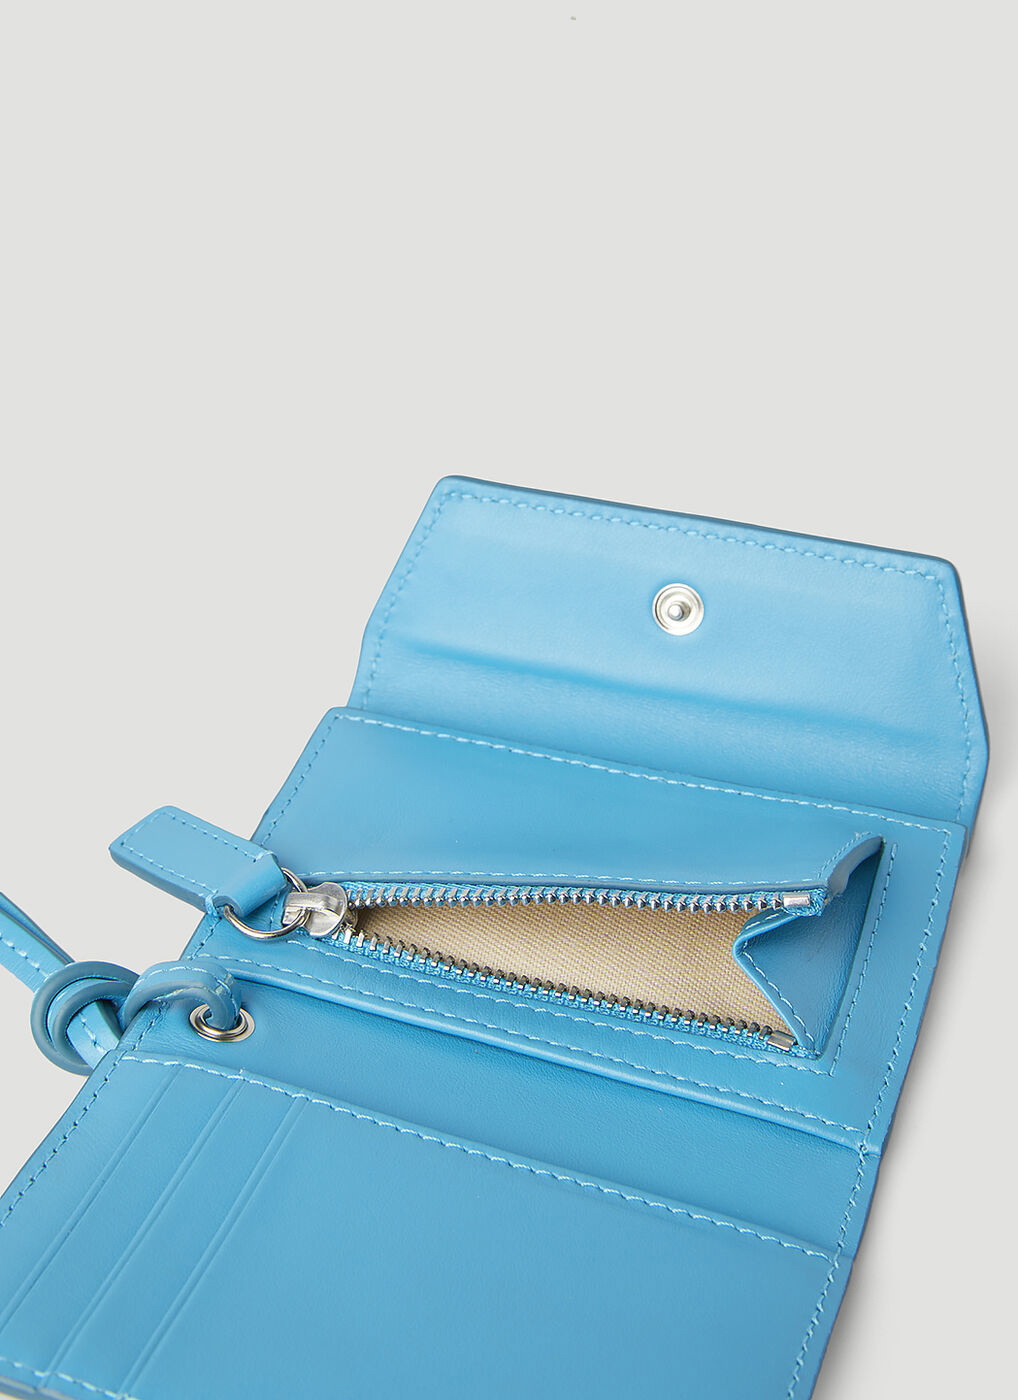 Jacquemus 'Le Porte Jacquemu' wallet with strap, Men's Accessories